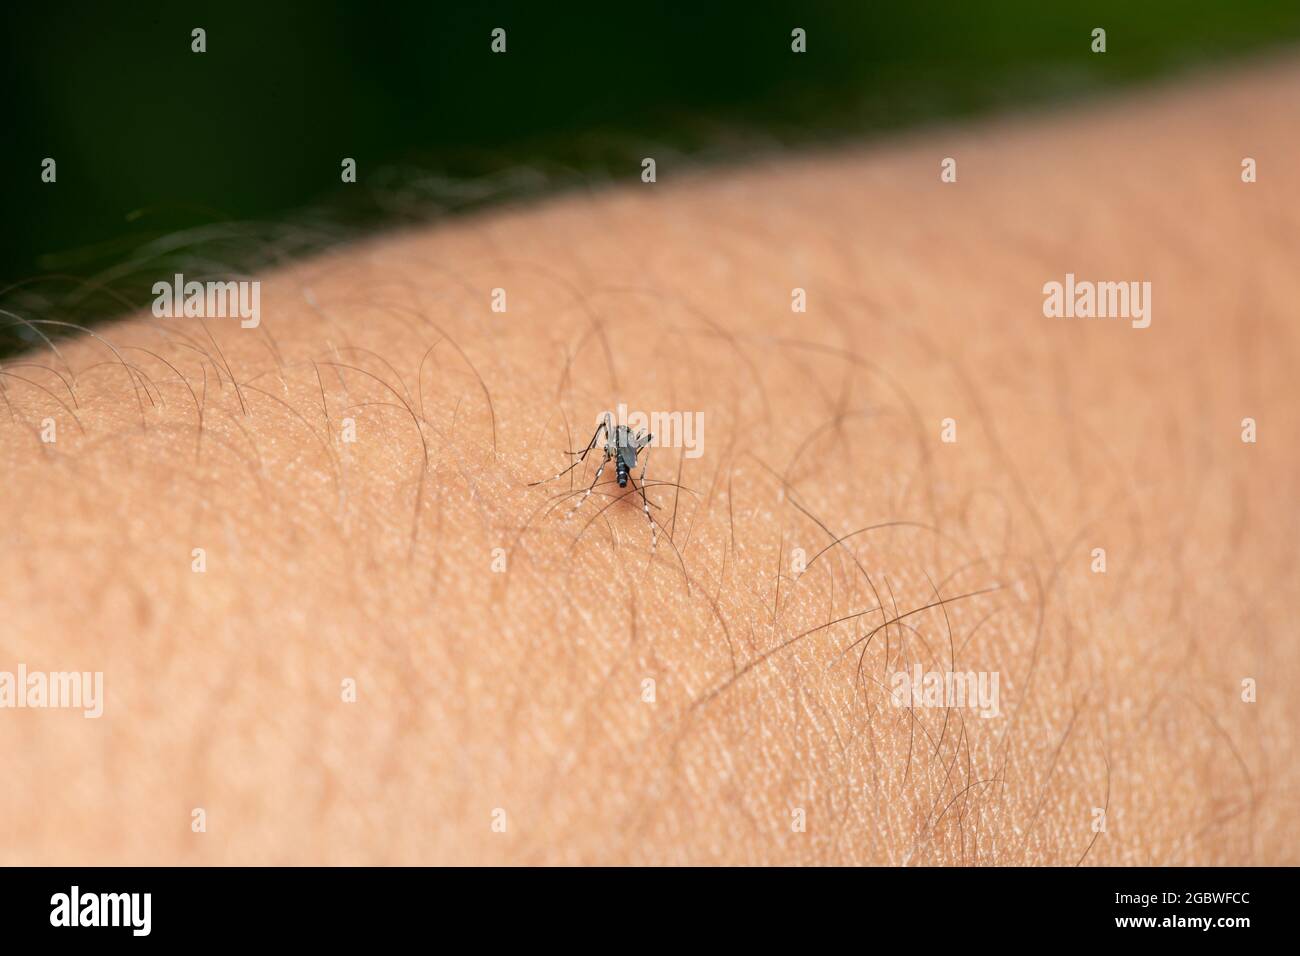 Moustique tigre asiatique (Aedes albopictus) piquer la peau et se nourrir de sang humain Banque D'Images